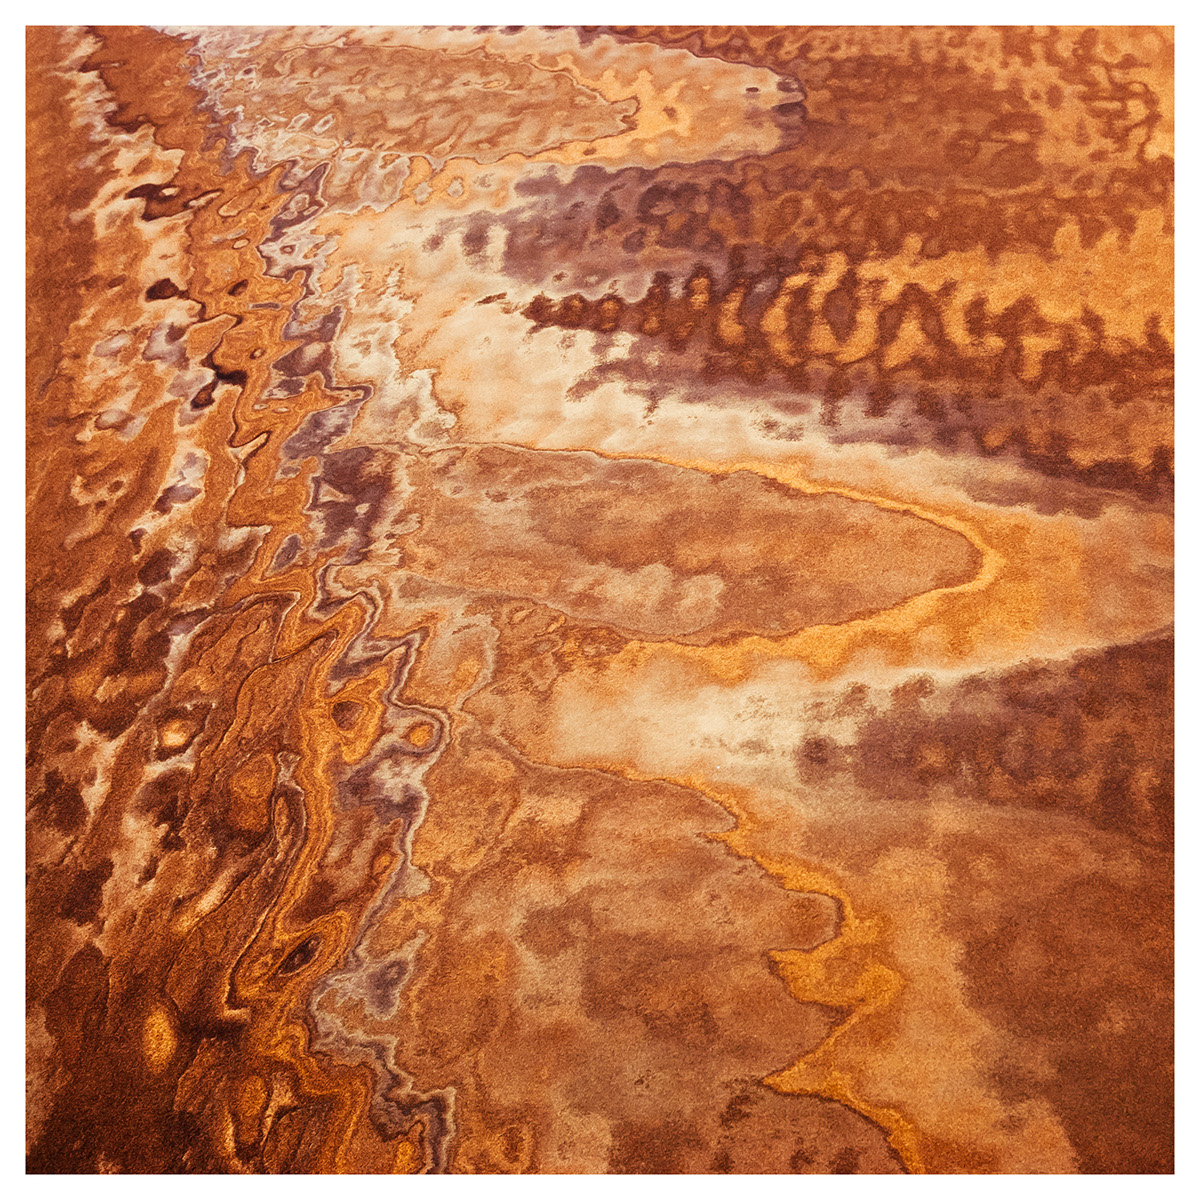 dune Namibia namib desert sand Patterns texture art abstract pattern textures namibian desert